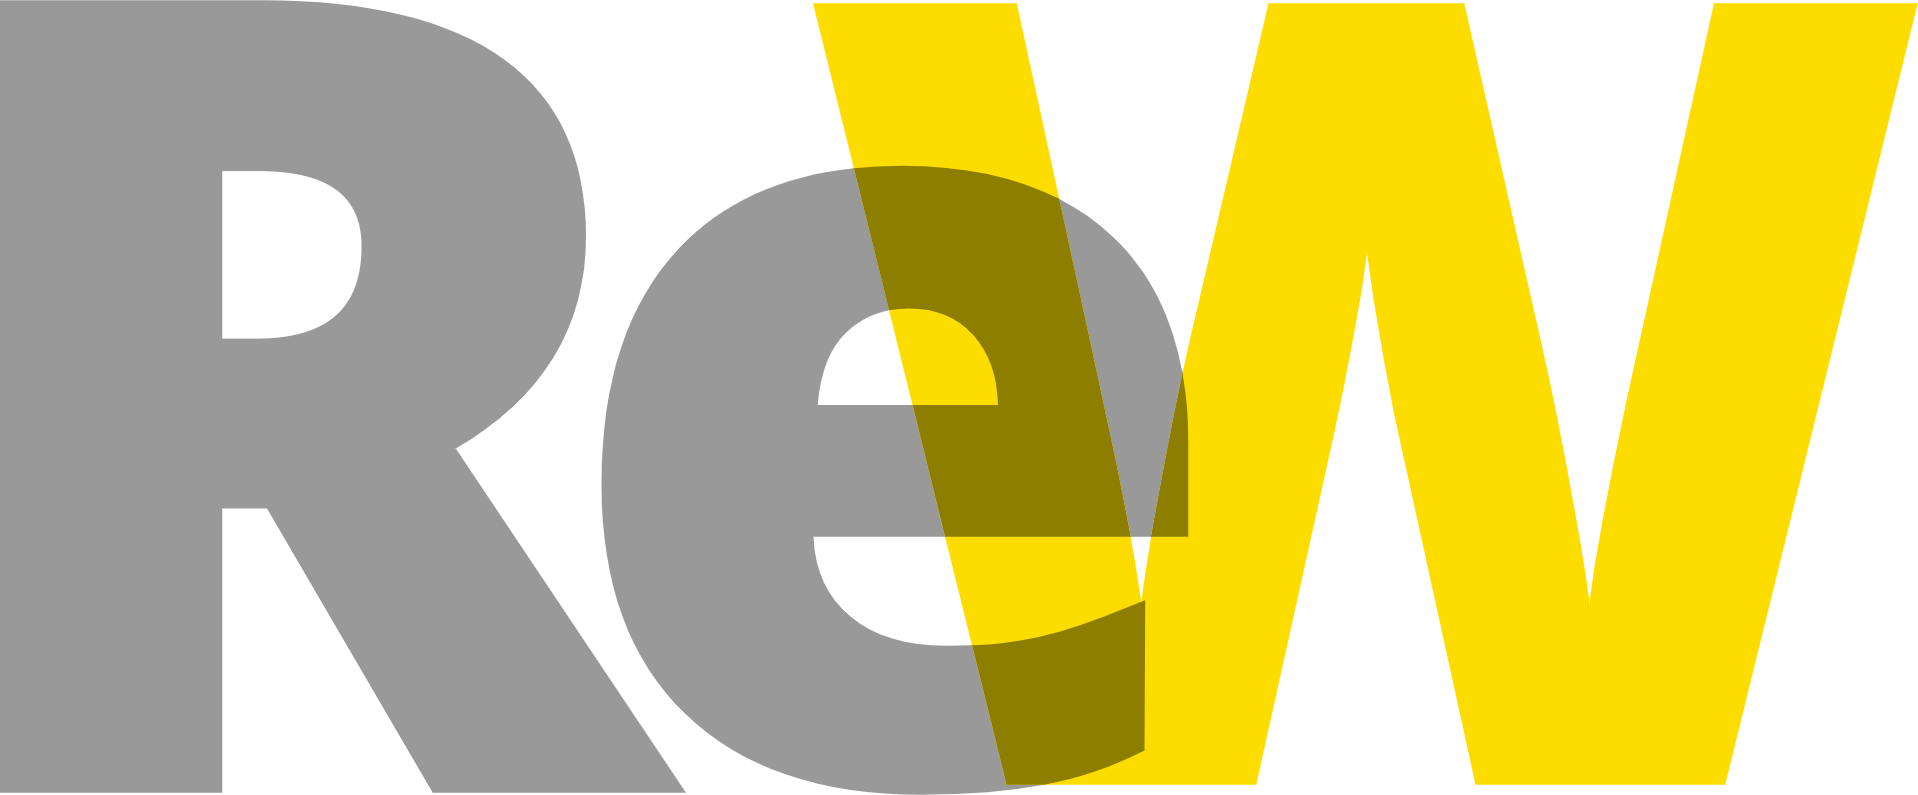 ReWalk Robotics logo (transparent PNG)